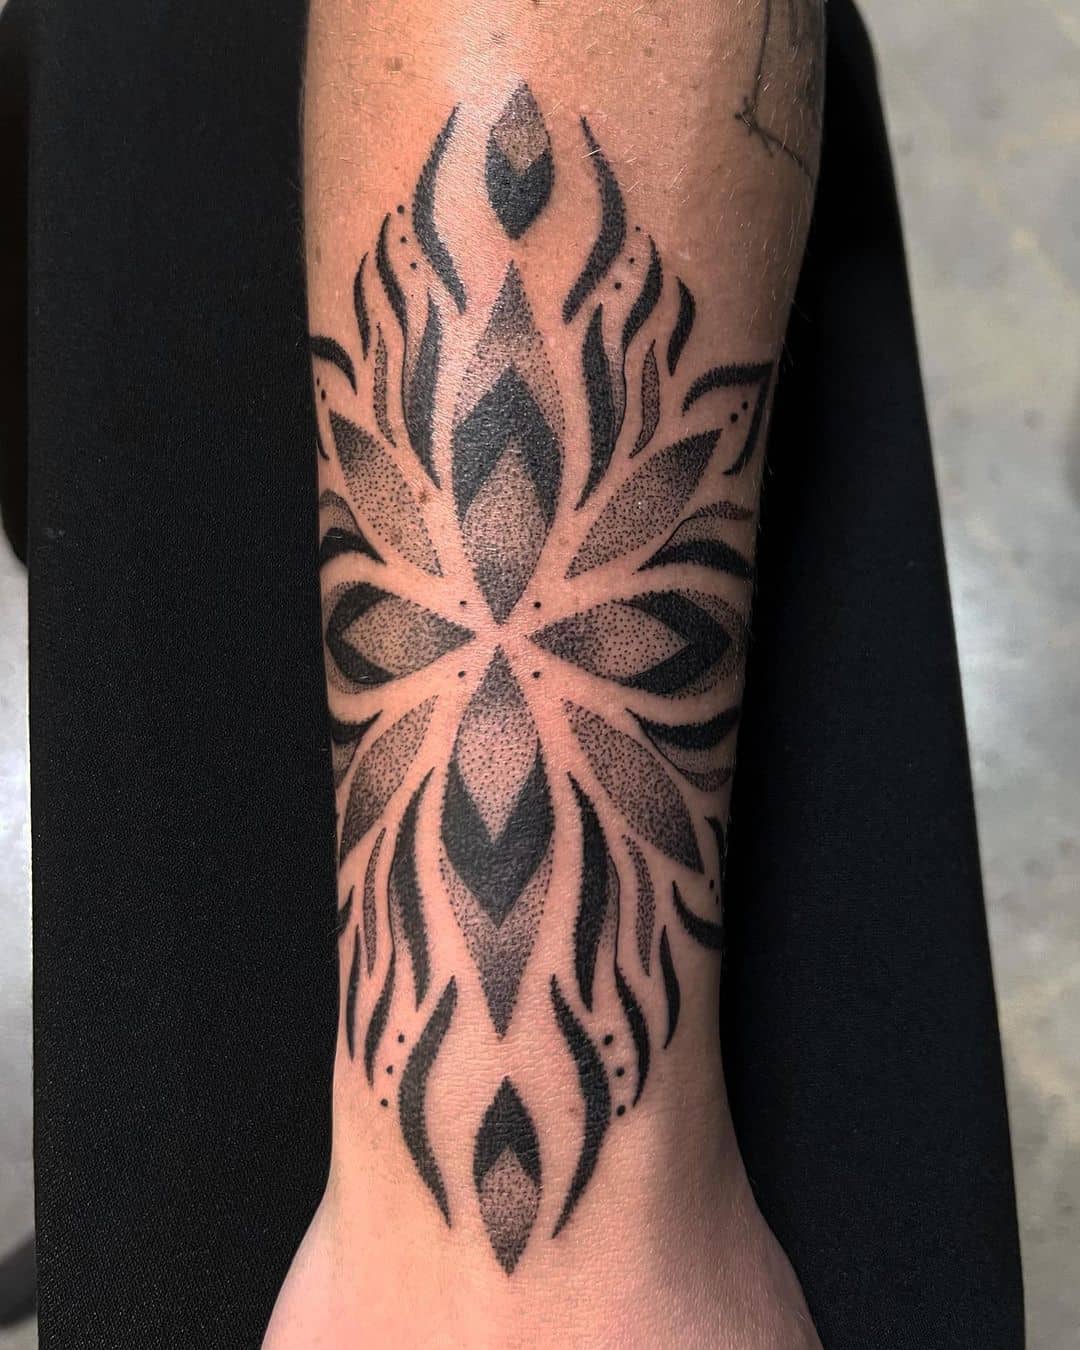 Beautiful geometric tattoo on arm by wajapi tattoo